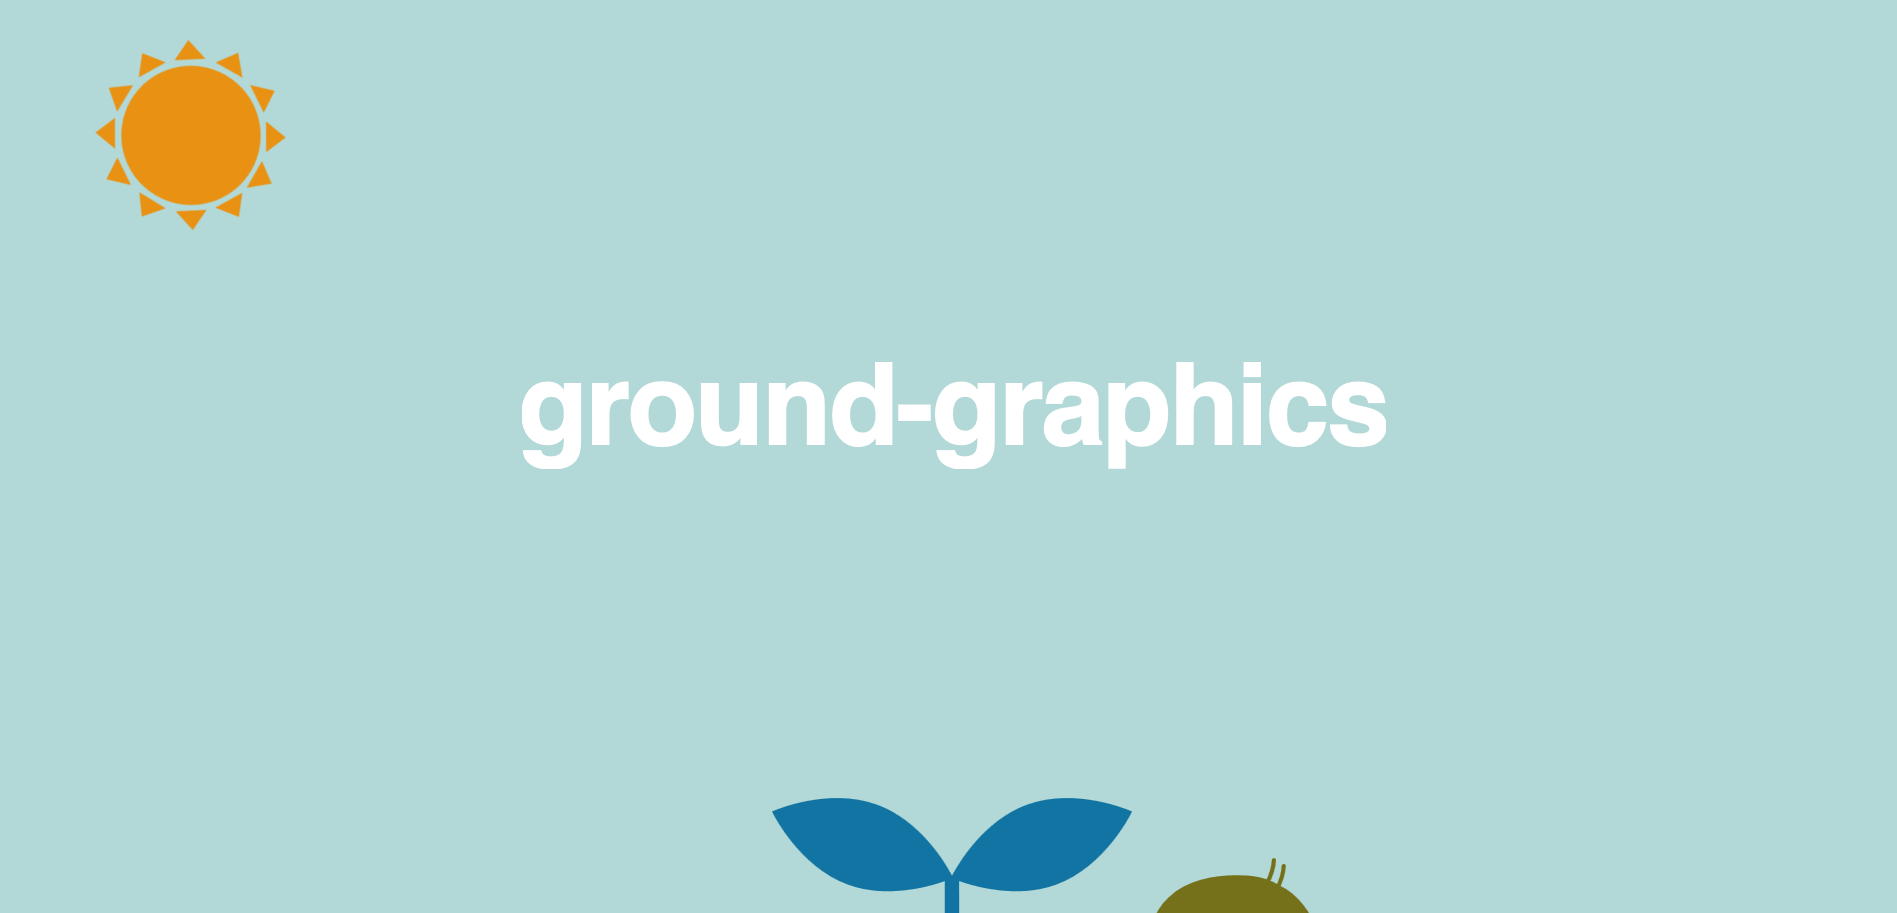 有限会社 グラウンド・グラフィックスのグラウンド・グラフィックスサービス